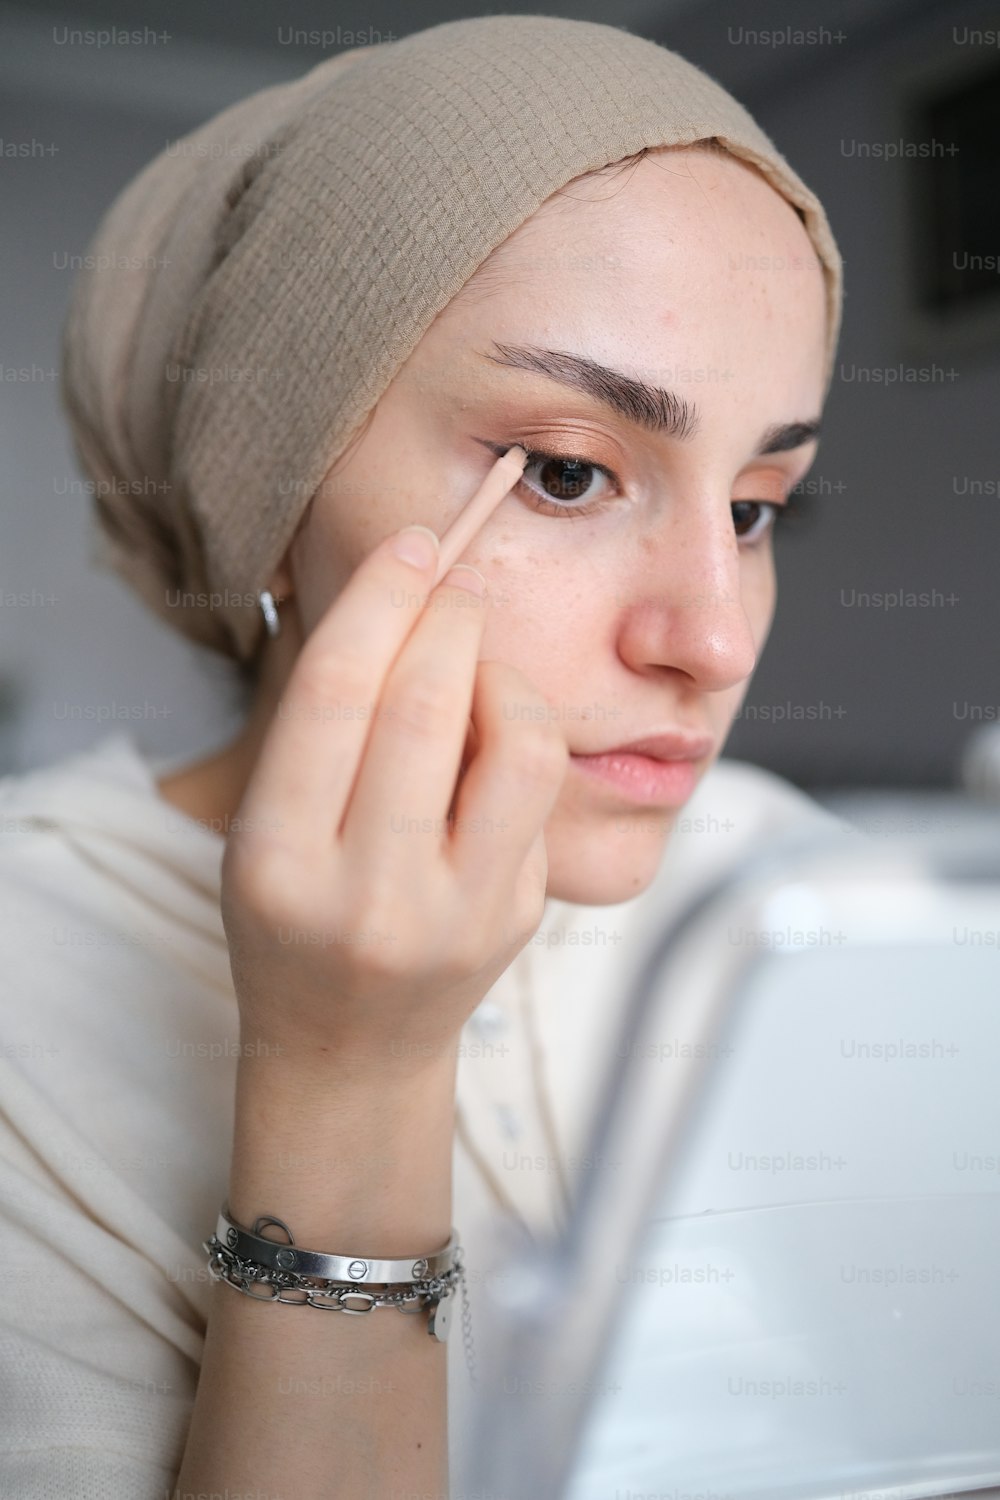 Une femme avec un foulard sur la tête regardant un ordinateur portable